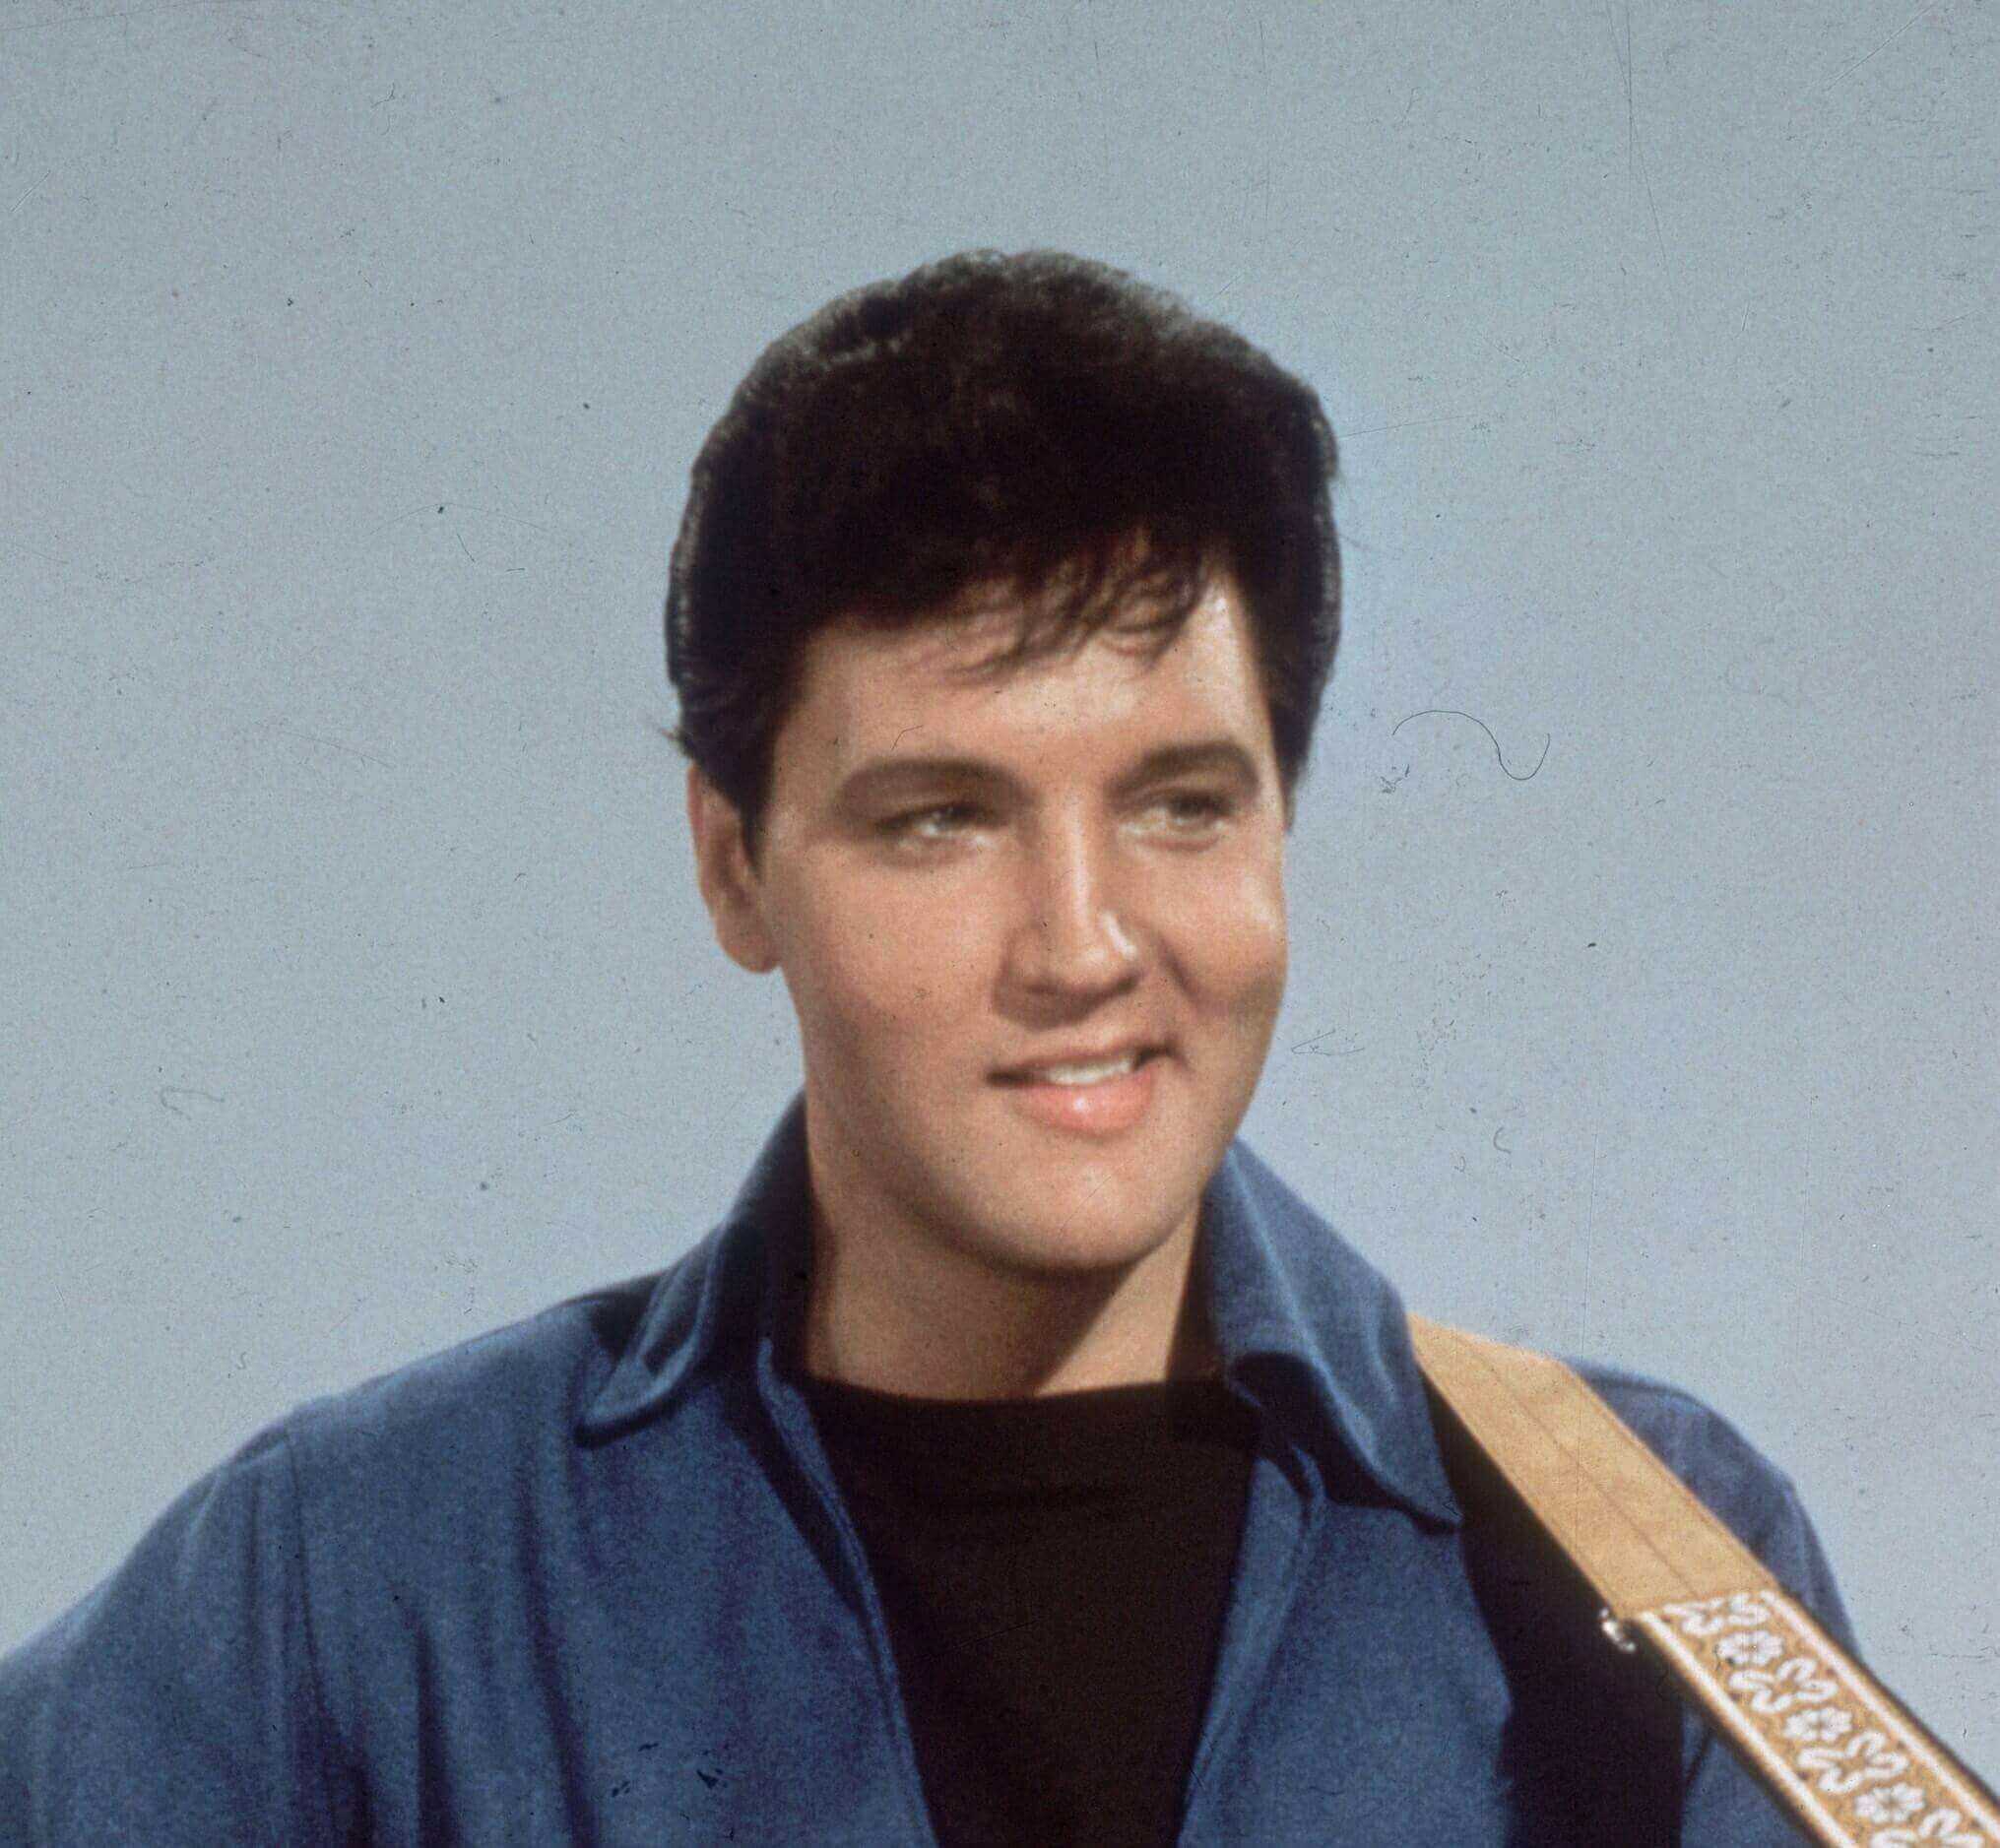 "Don't Be Cruel" singer Elvis Presley wearing blue